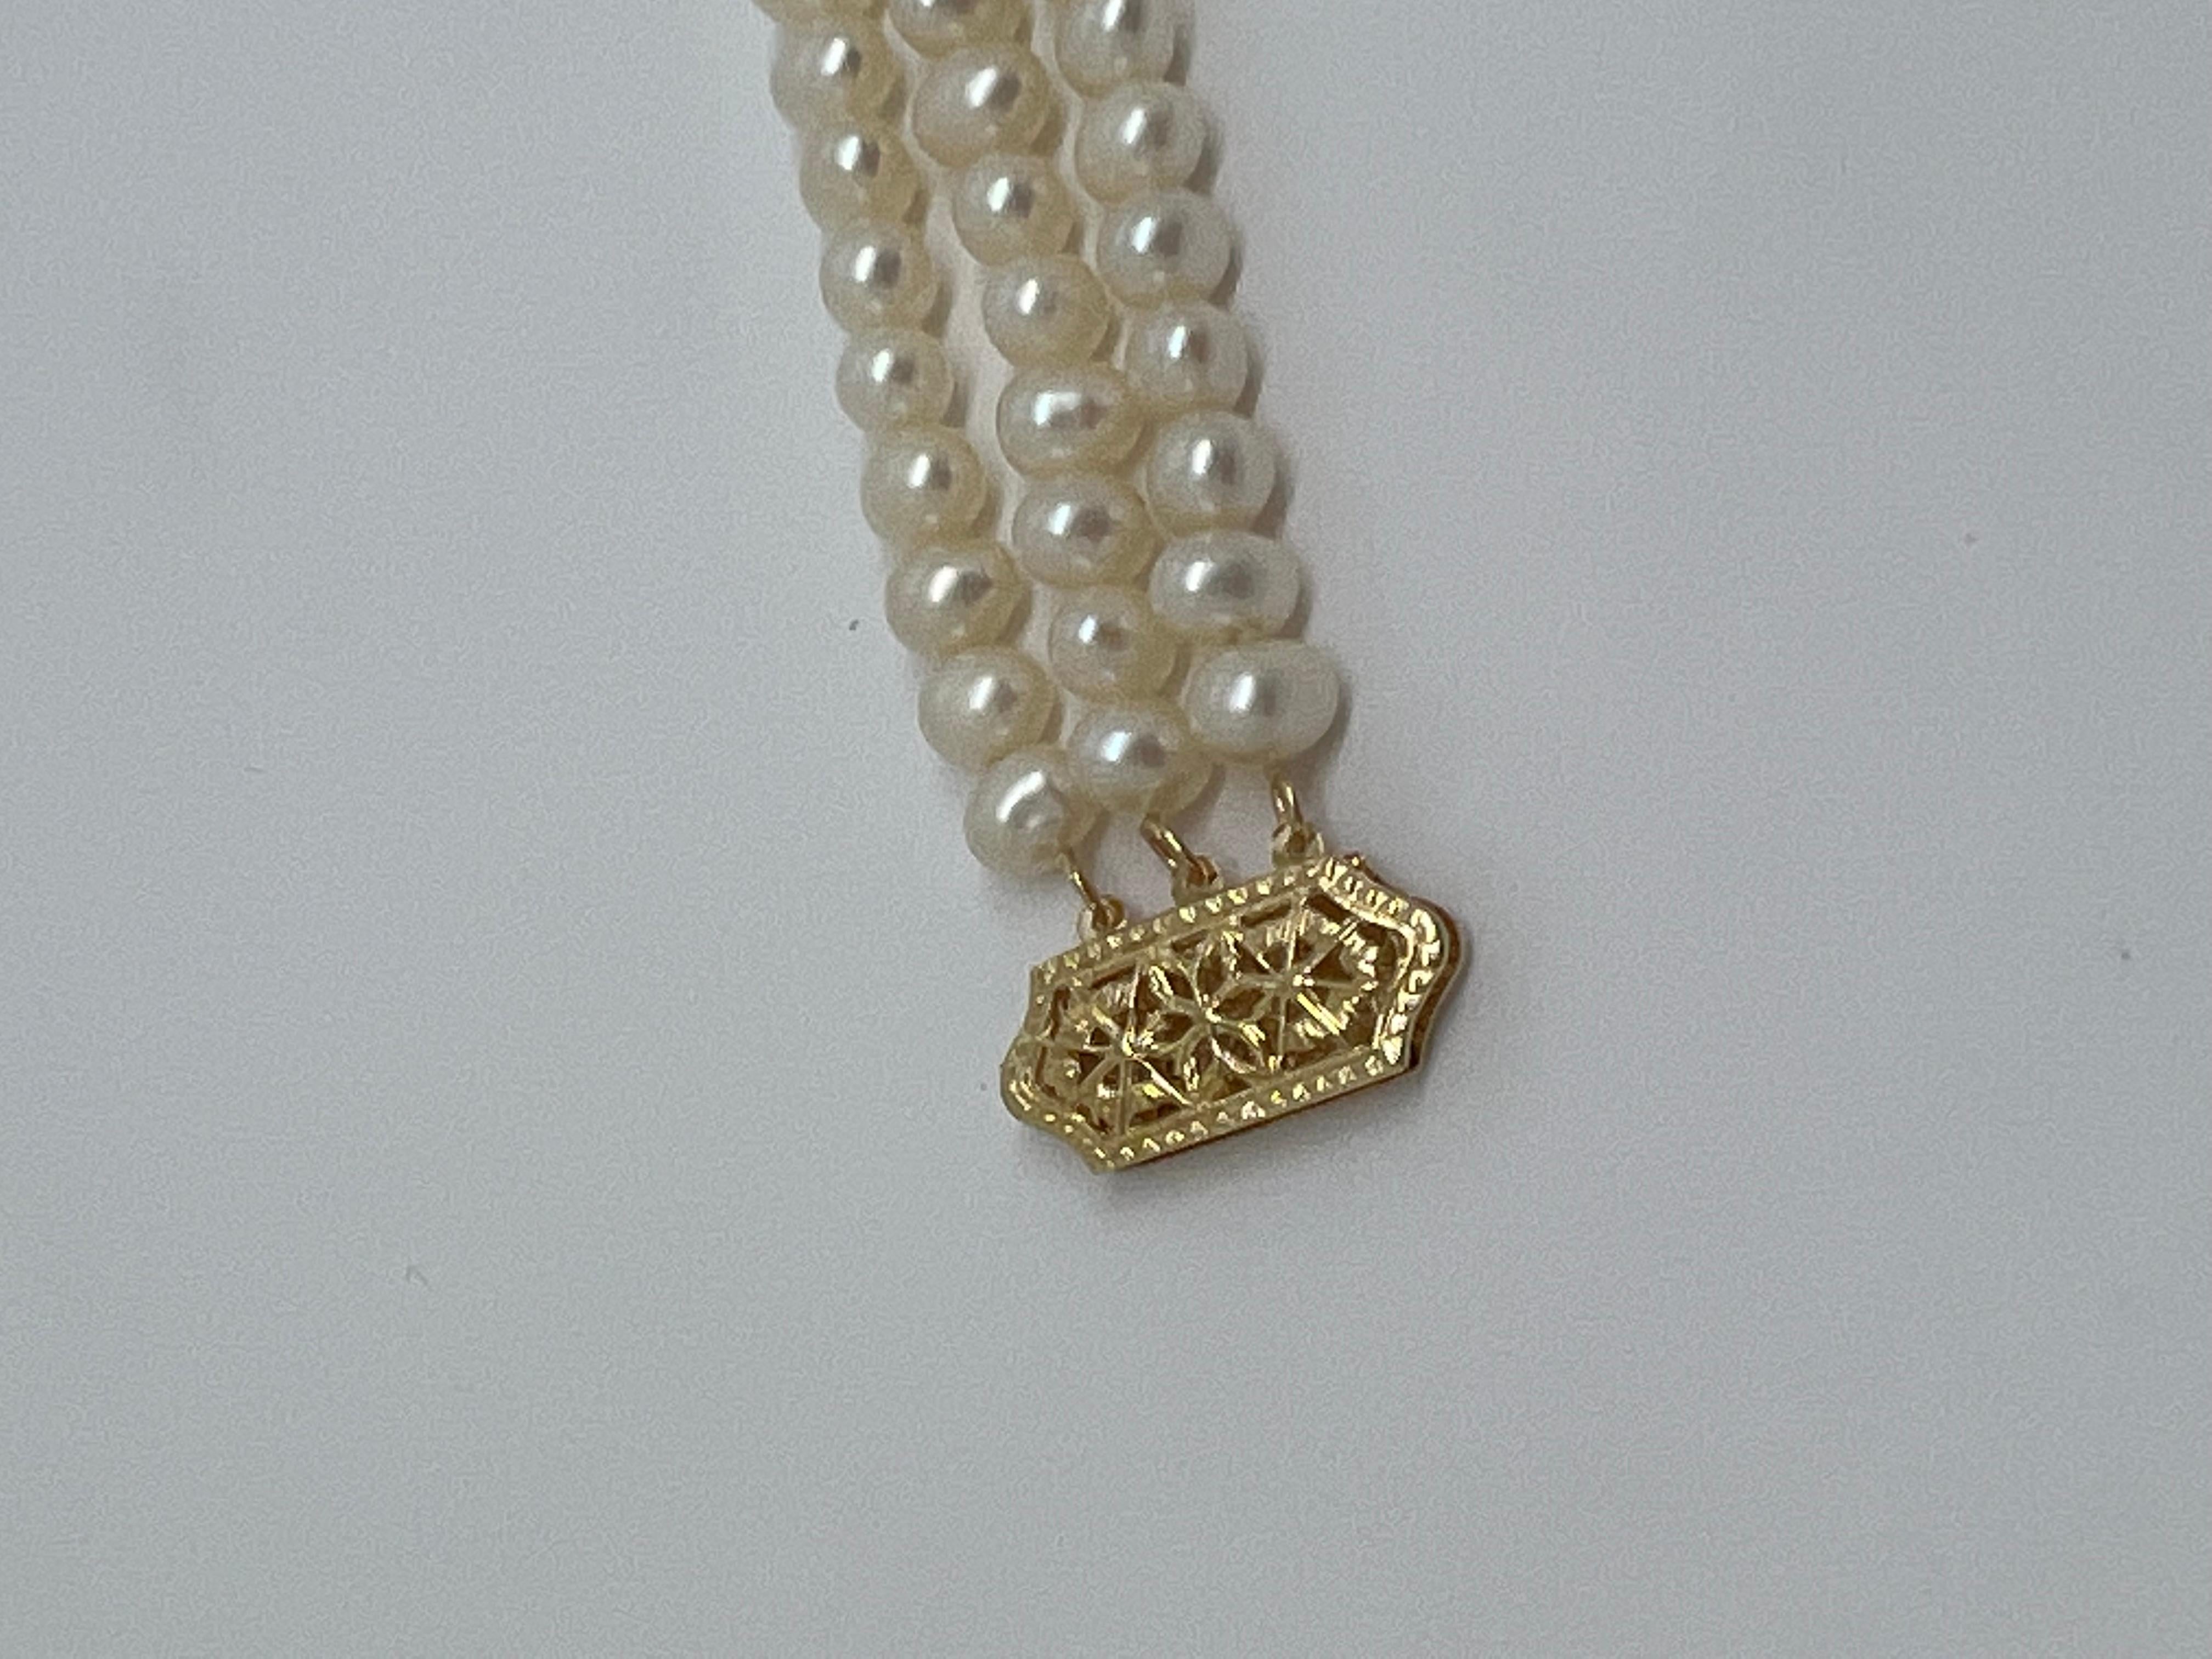 A vendre :

Ce fermoir en or jaune massif de 14 carats est absolument superbe  Bracelet de perles à double fil - Une vie et un lustre étonnants ! 

Excellent travail
Longueur : 7 pouces
Poids : 19,2 grammes
Métal : or massif 14k
Poinçon :